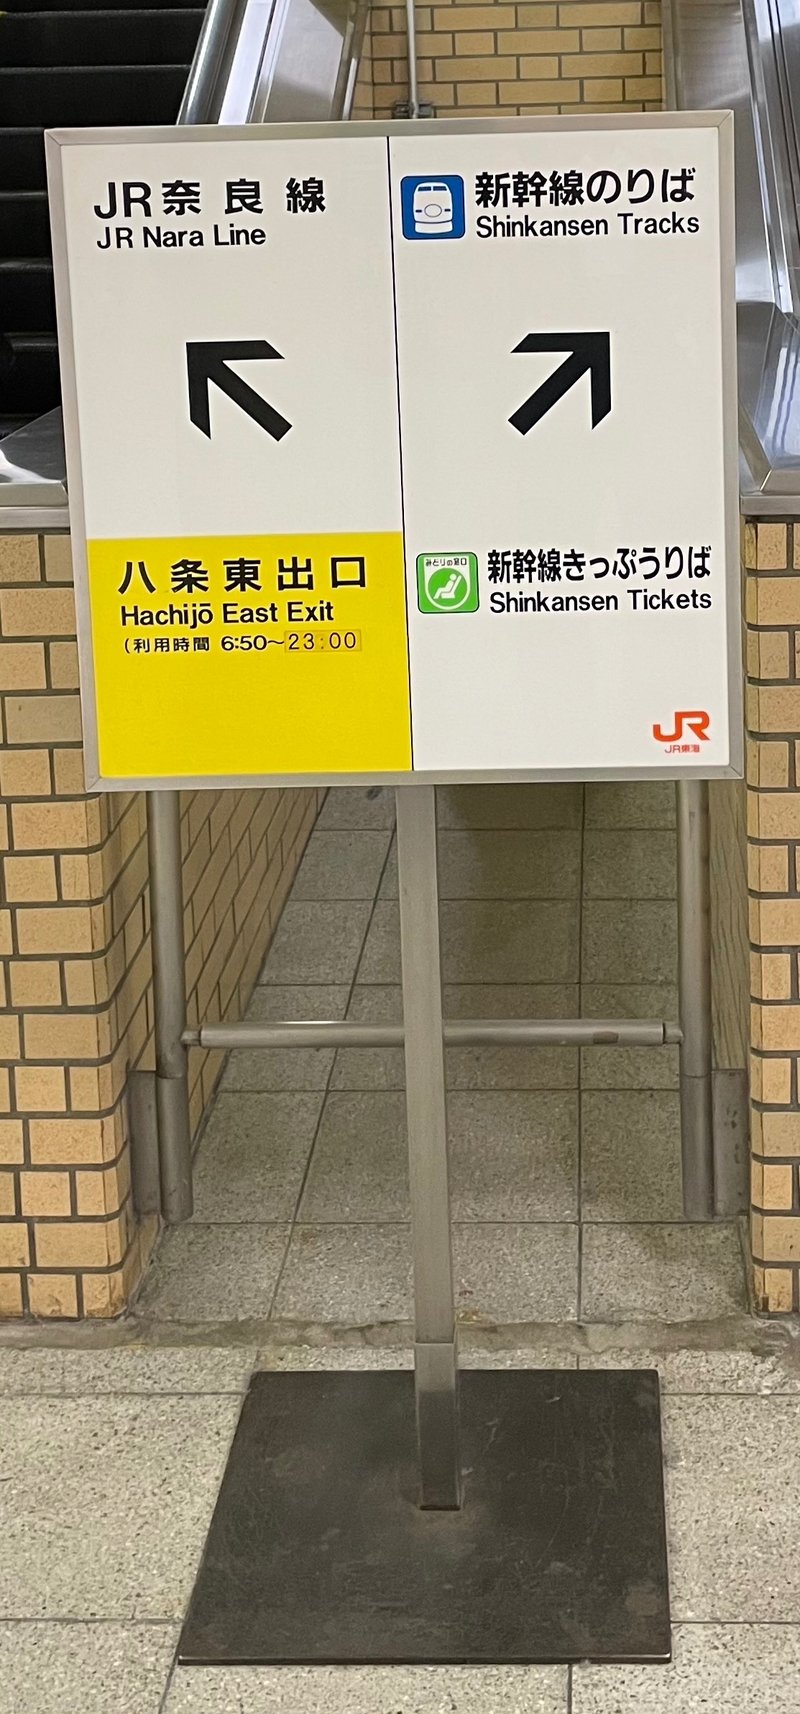 看板がある。右手に行くと新幹線のりばへ進める。新幹線の英訳がShinkansenなのに納得がいっていない。